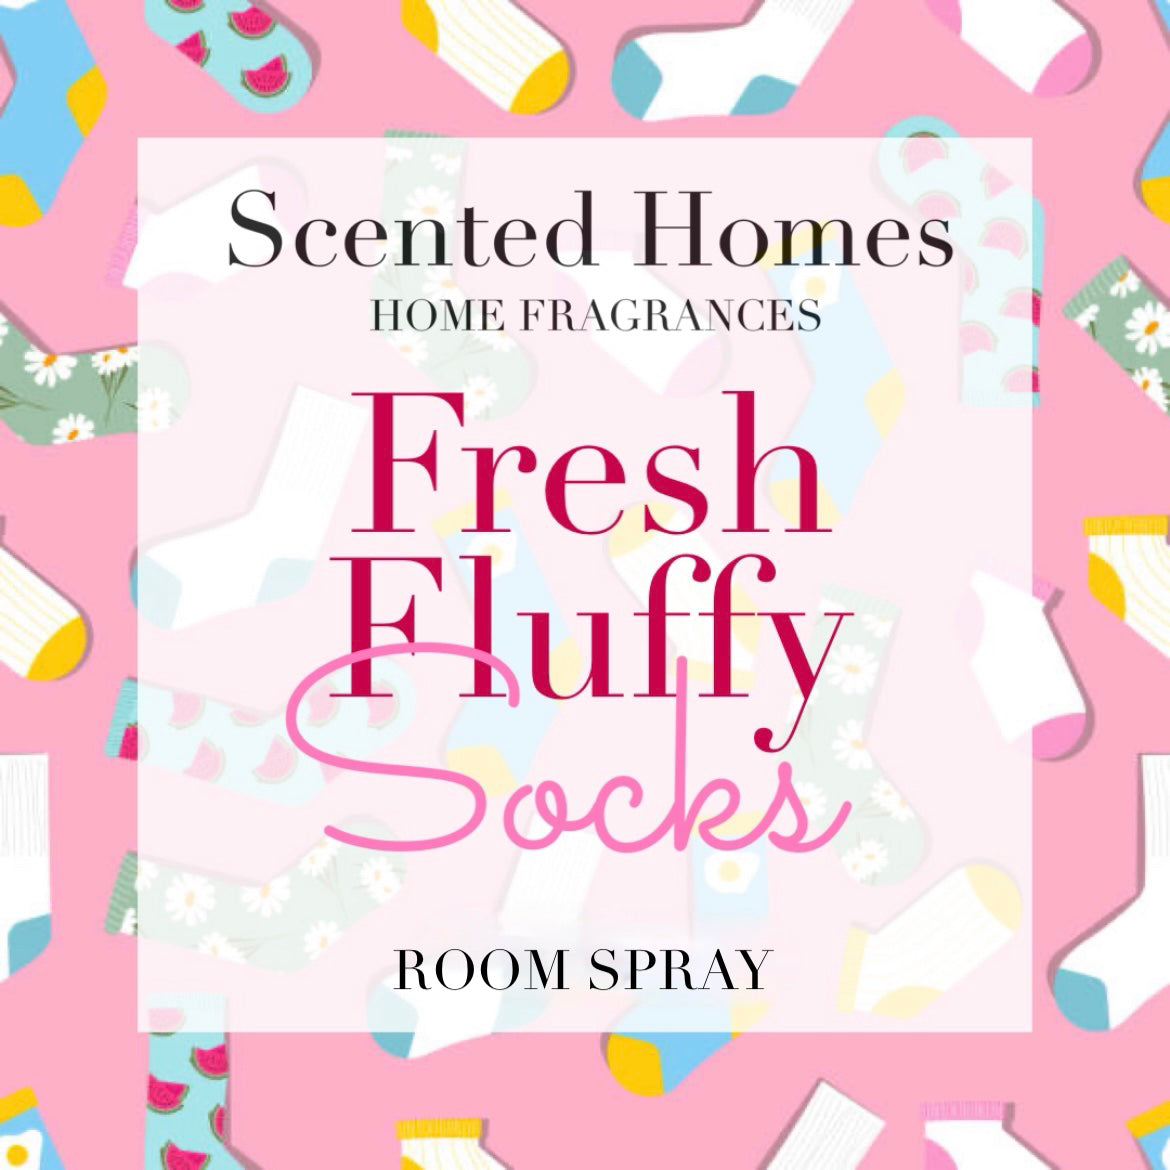 Fresh Fluffy Socks Spray